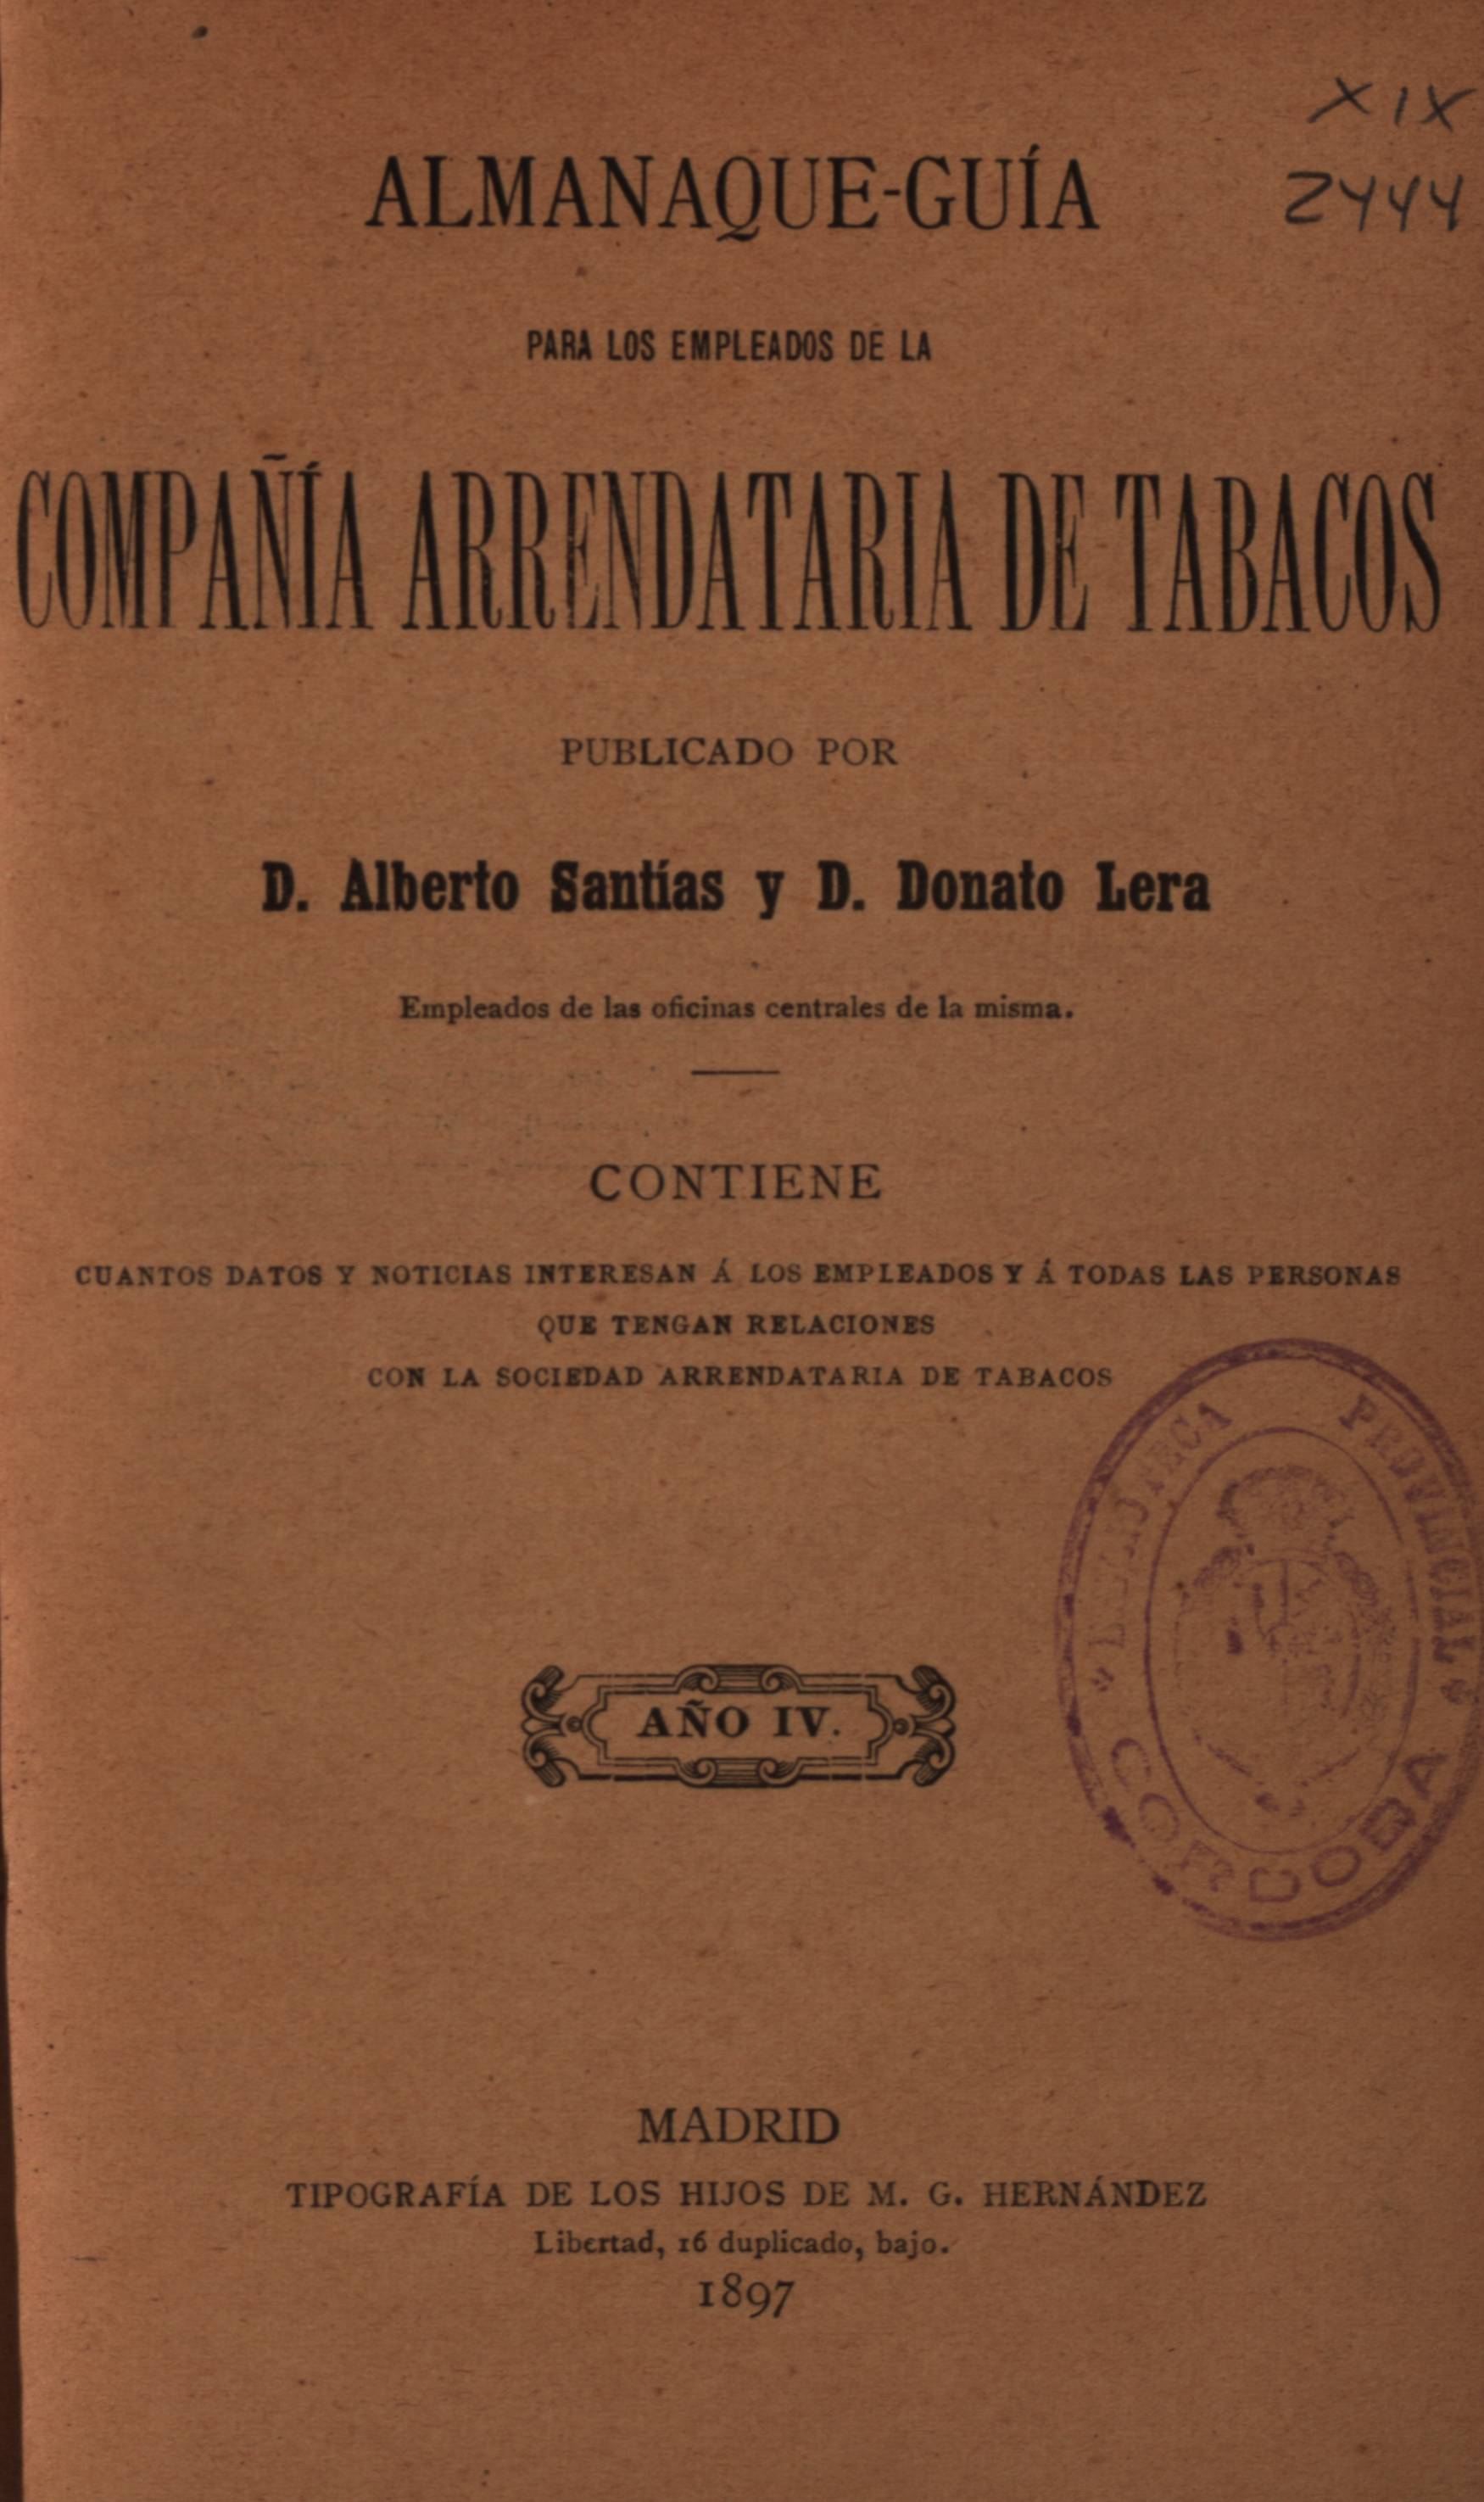 Almanaque-guía para los empleados de la compañía arrendataria de tabacos. Publicado por D. Alberto Santías...